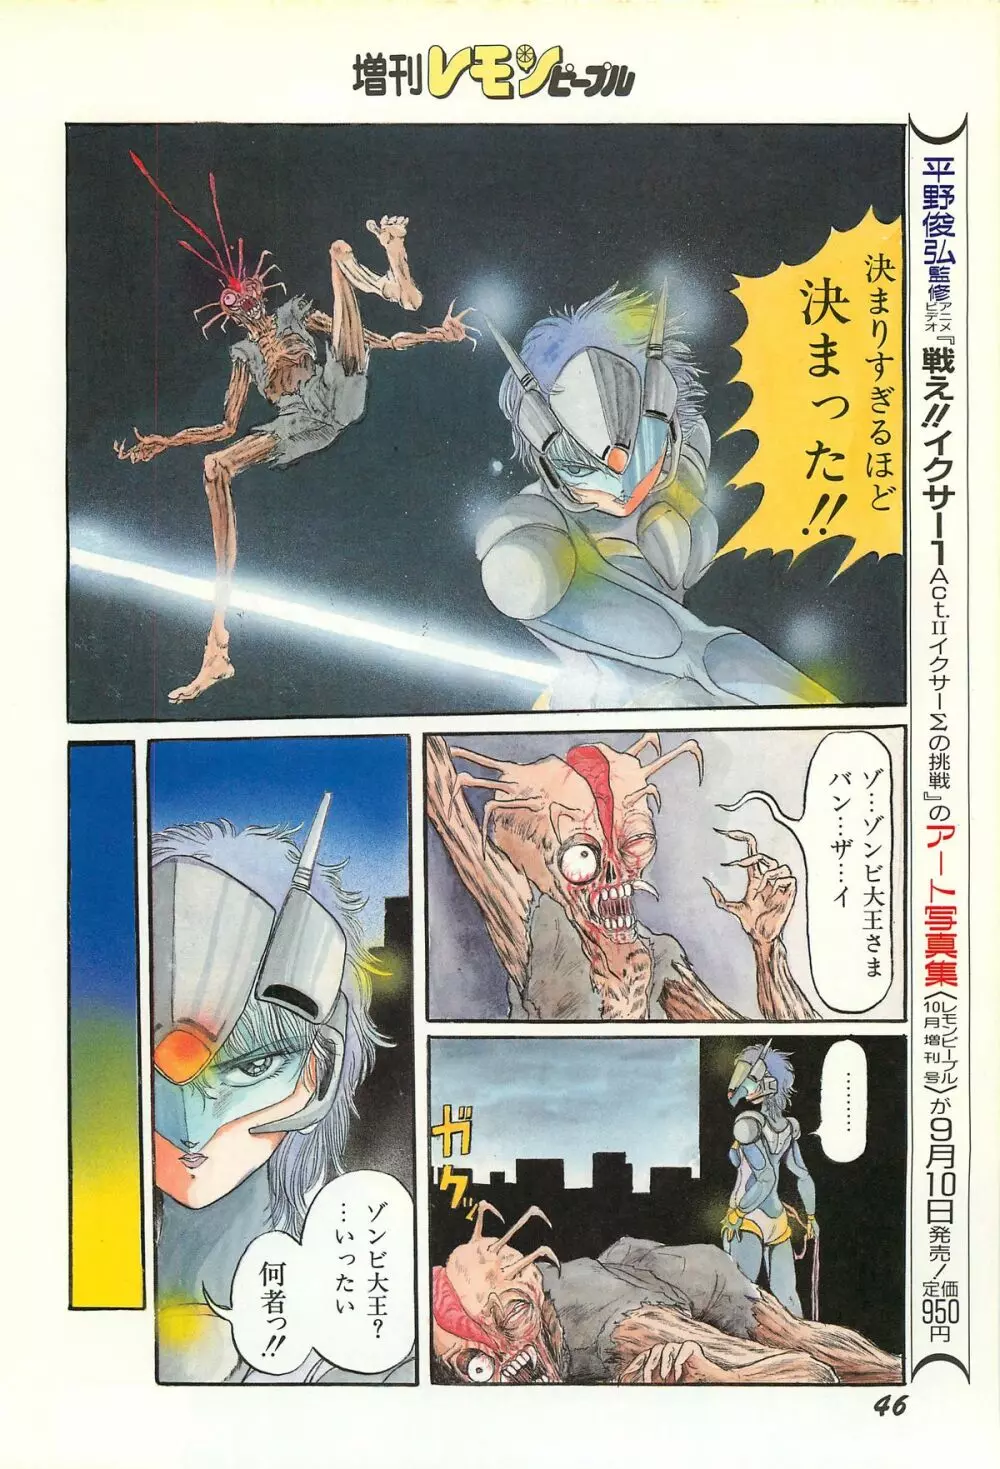 レモンピープル 1986年9月増刊号 Vol.61 オールカラー 48ページ